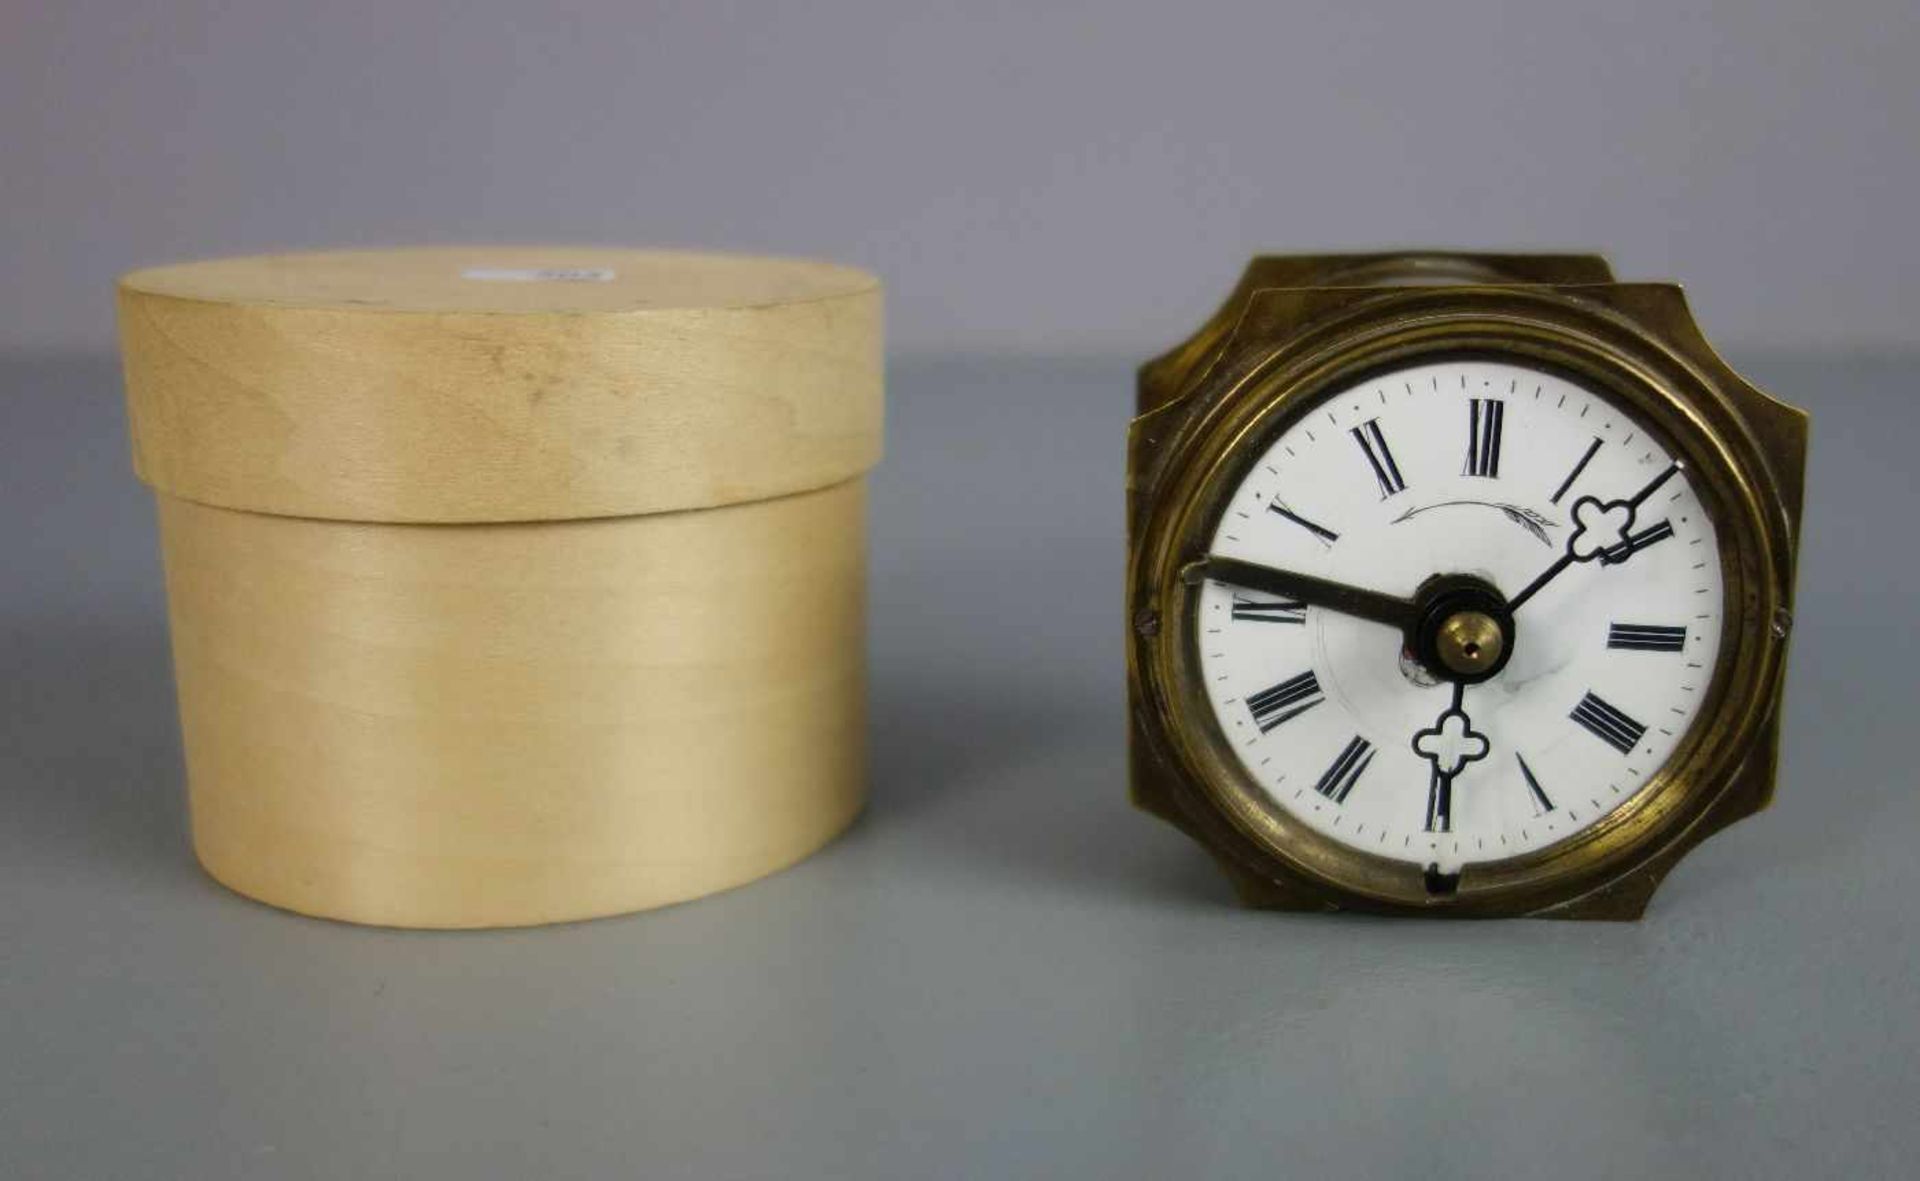 WECKER im Messinggehäuse / alarm clock, um 1900. Zylindrisches Gehäuse aus Messing mit